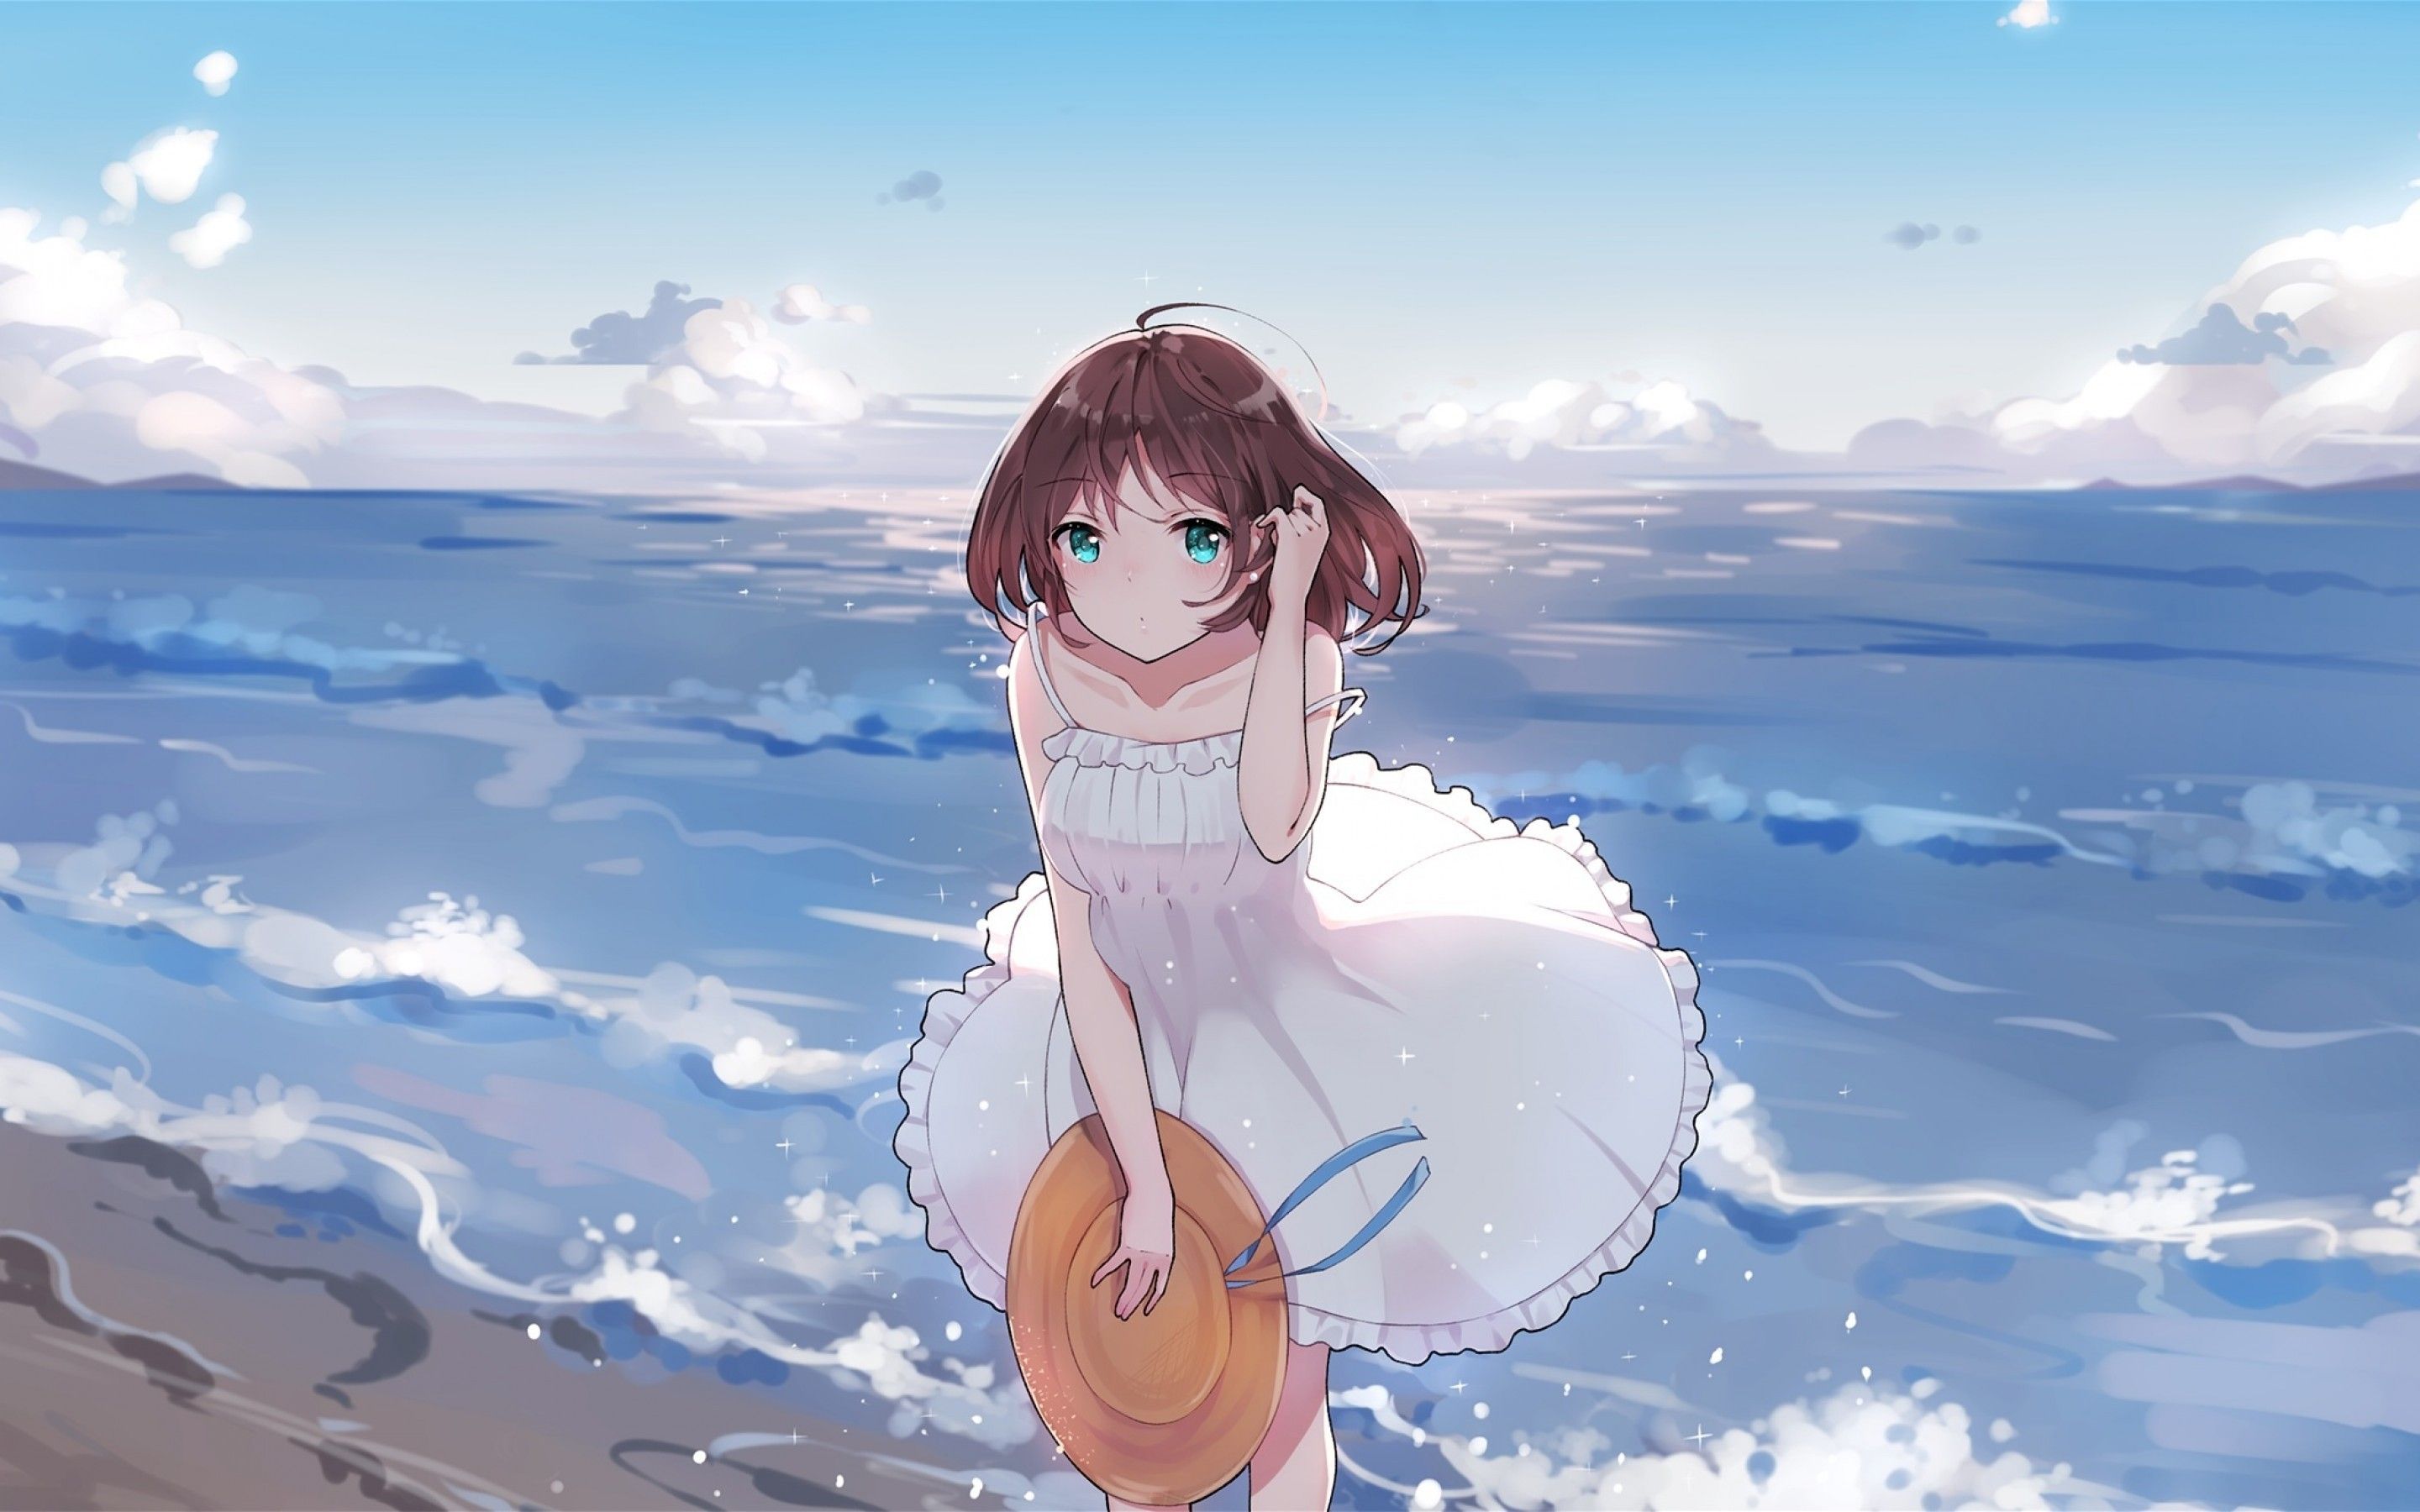 Download 2880x1800 Summer Dress, Anime Girl, Ocean, Waves, Beach